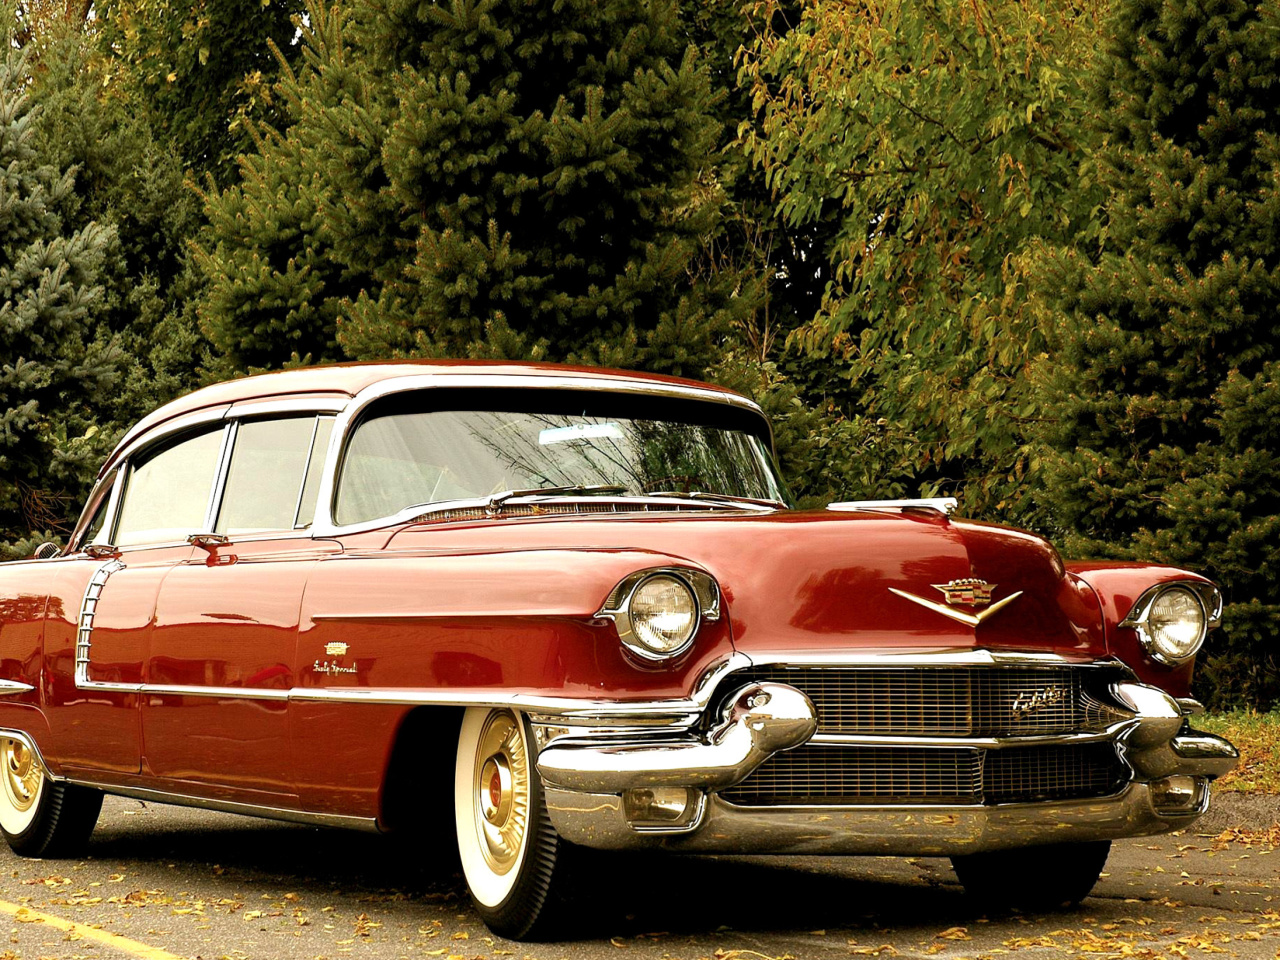 1956 Cadillac Maharani wallpaper 1280x960